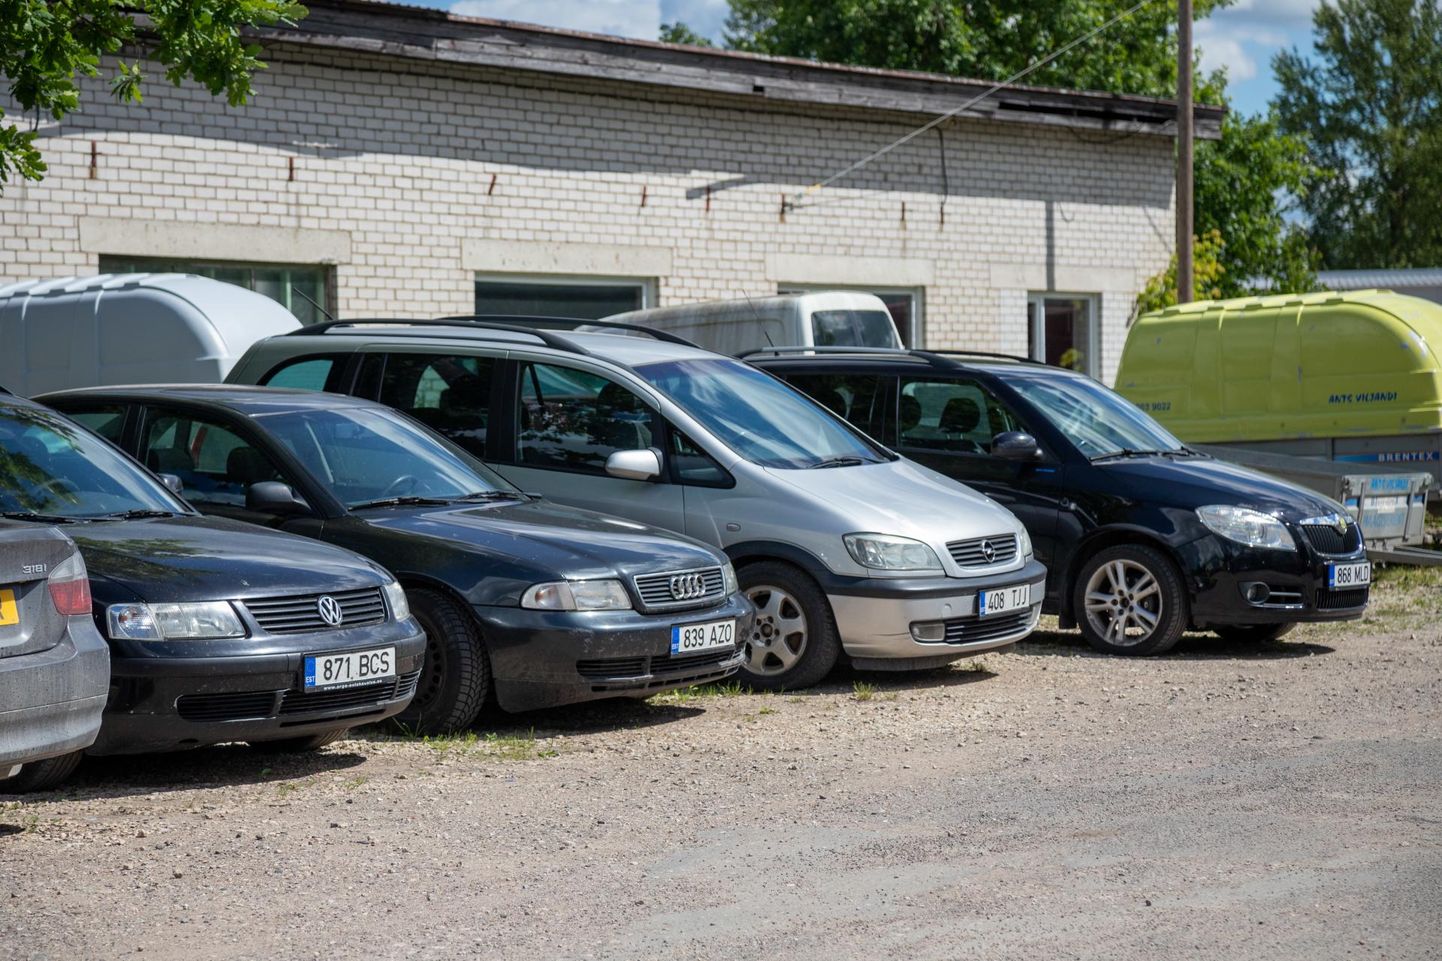 Osaühingu Ants Viljandi platsil seisis neljapäeva pärastlõunal mõni auto, mis ei olnud veel välja üüritud.